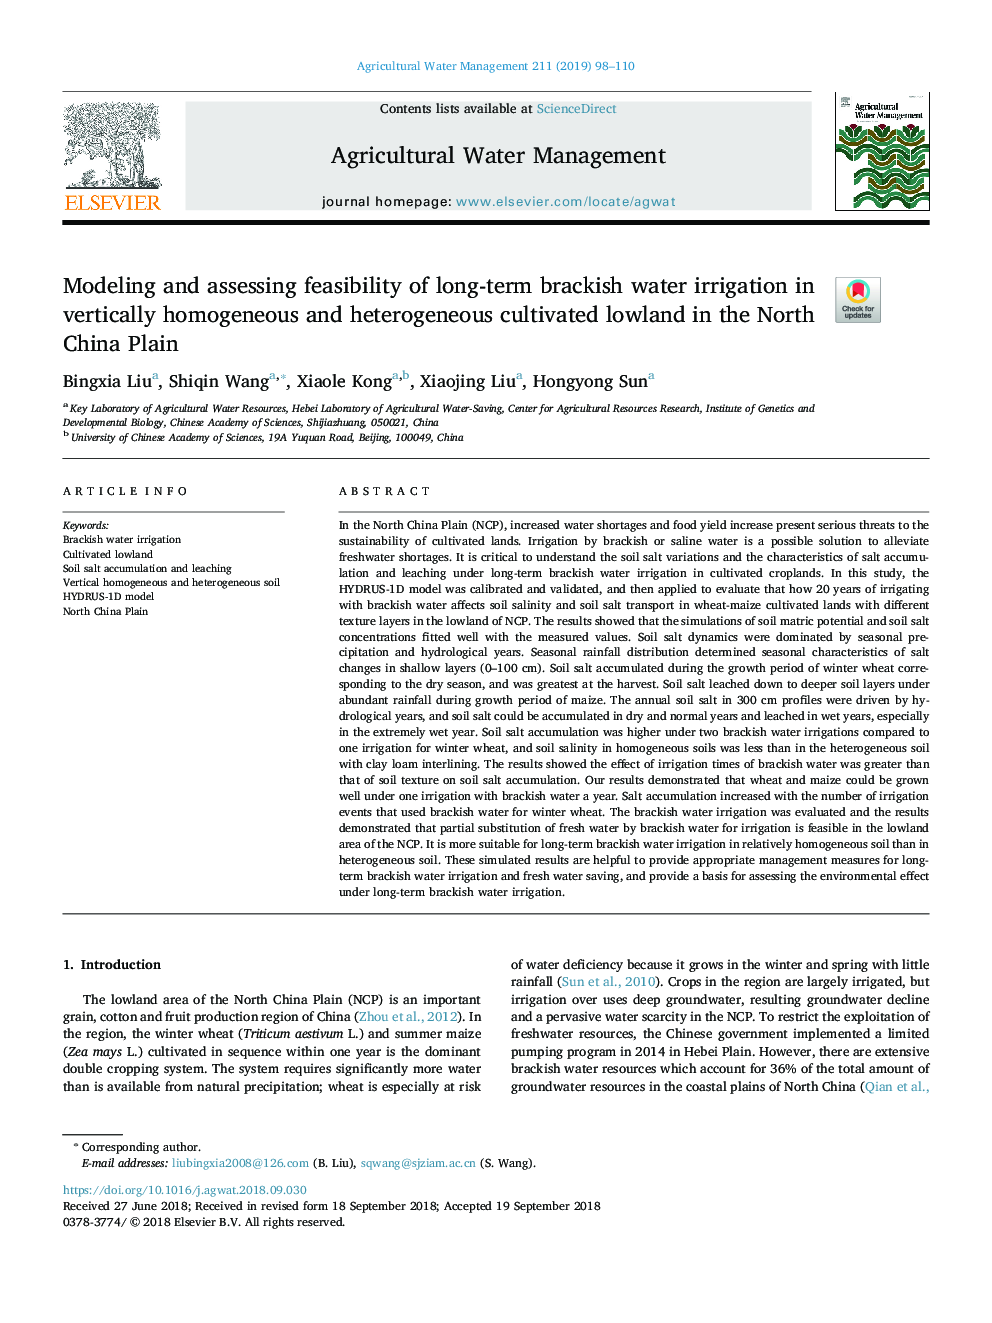 مدل سازی و ارزیابی امکان سنجی آبیاری بارانی آب شیرین در مناطق دوردست شمال غربی چین در سطح نیمه عمودی همگن و ناهمگن